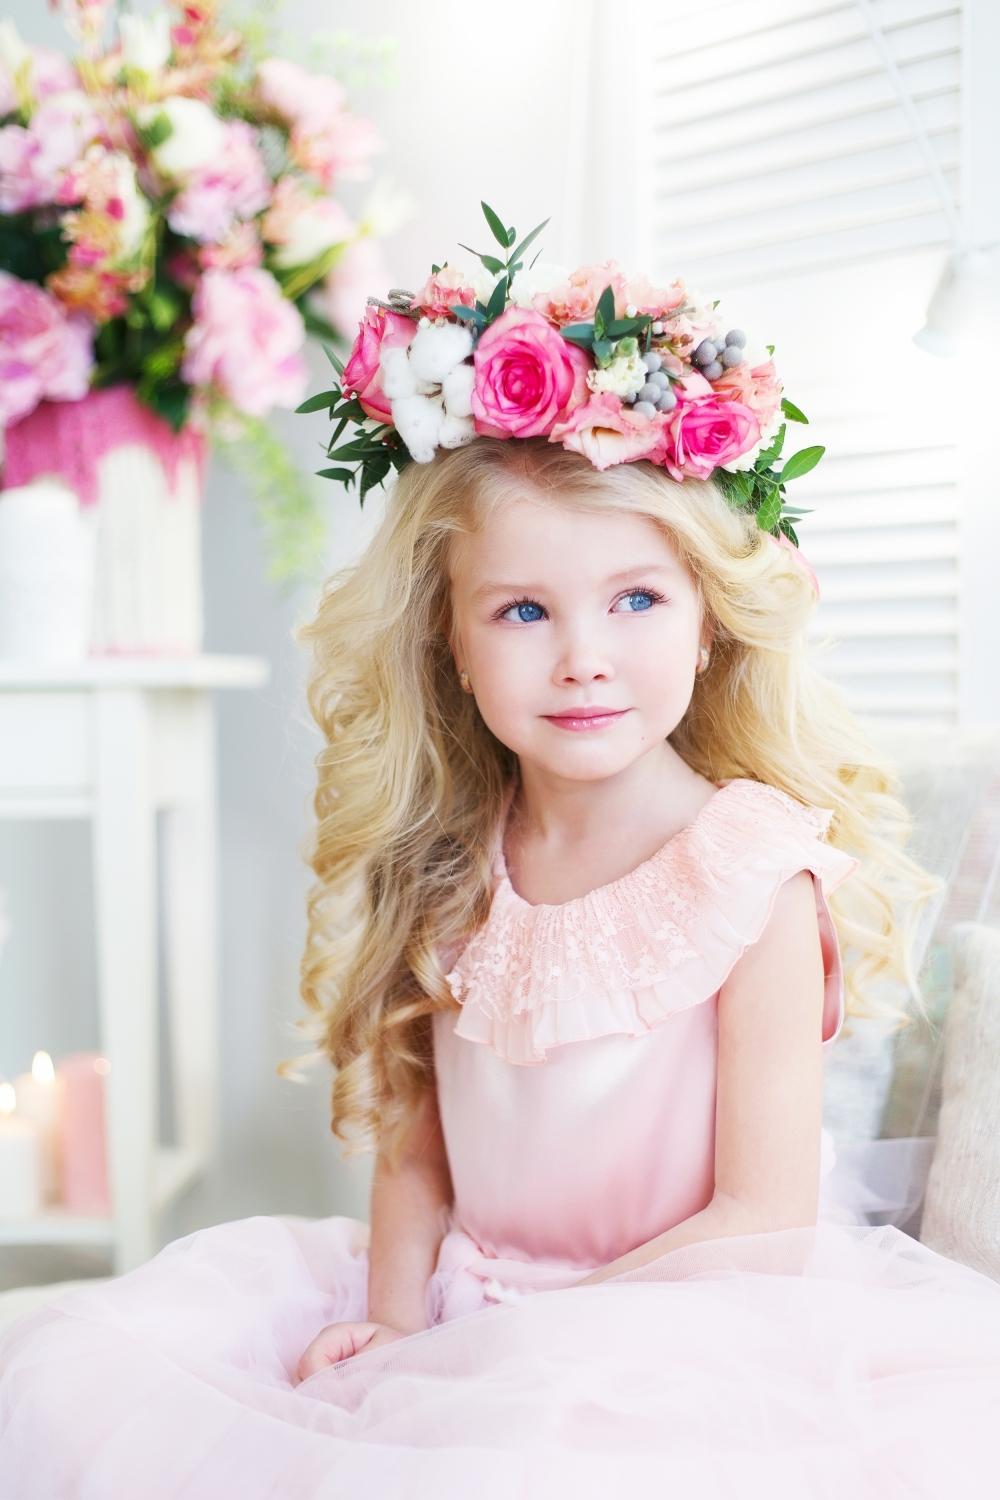 Чудесный веночек для Алины
florist: Надежда Бобровская
photographer: Ксения Гончарова